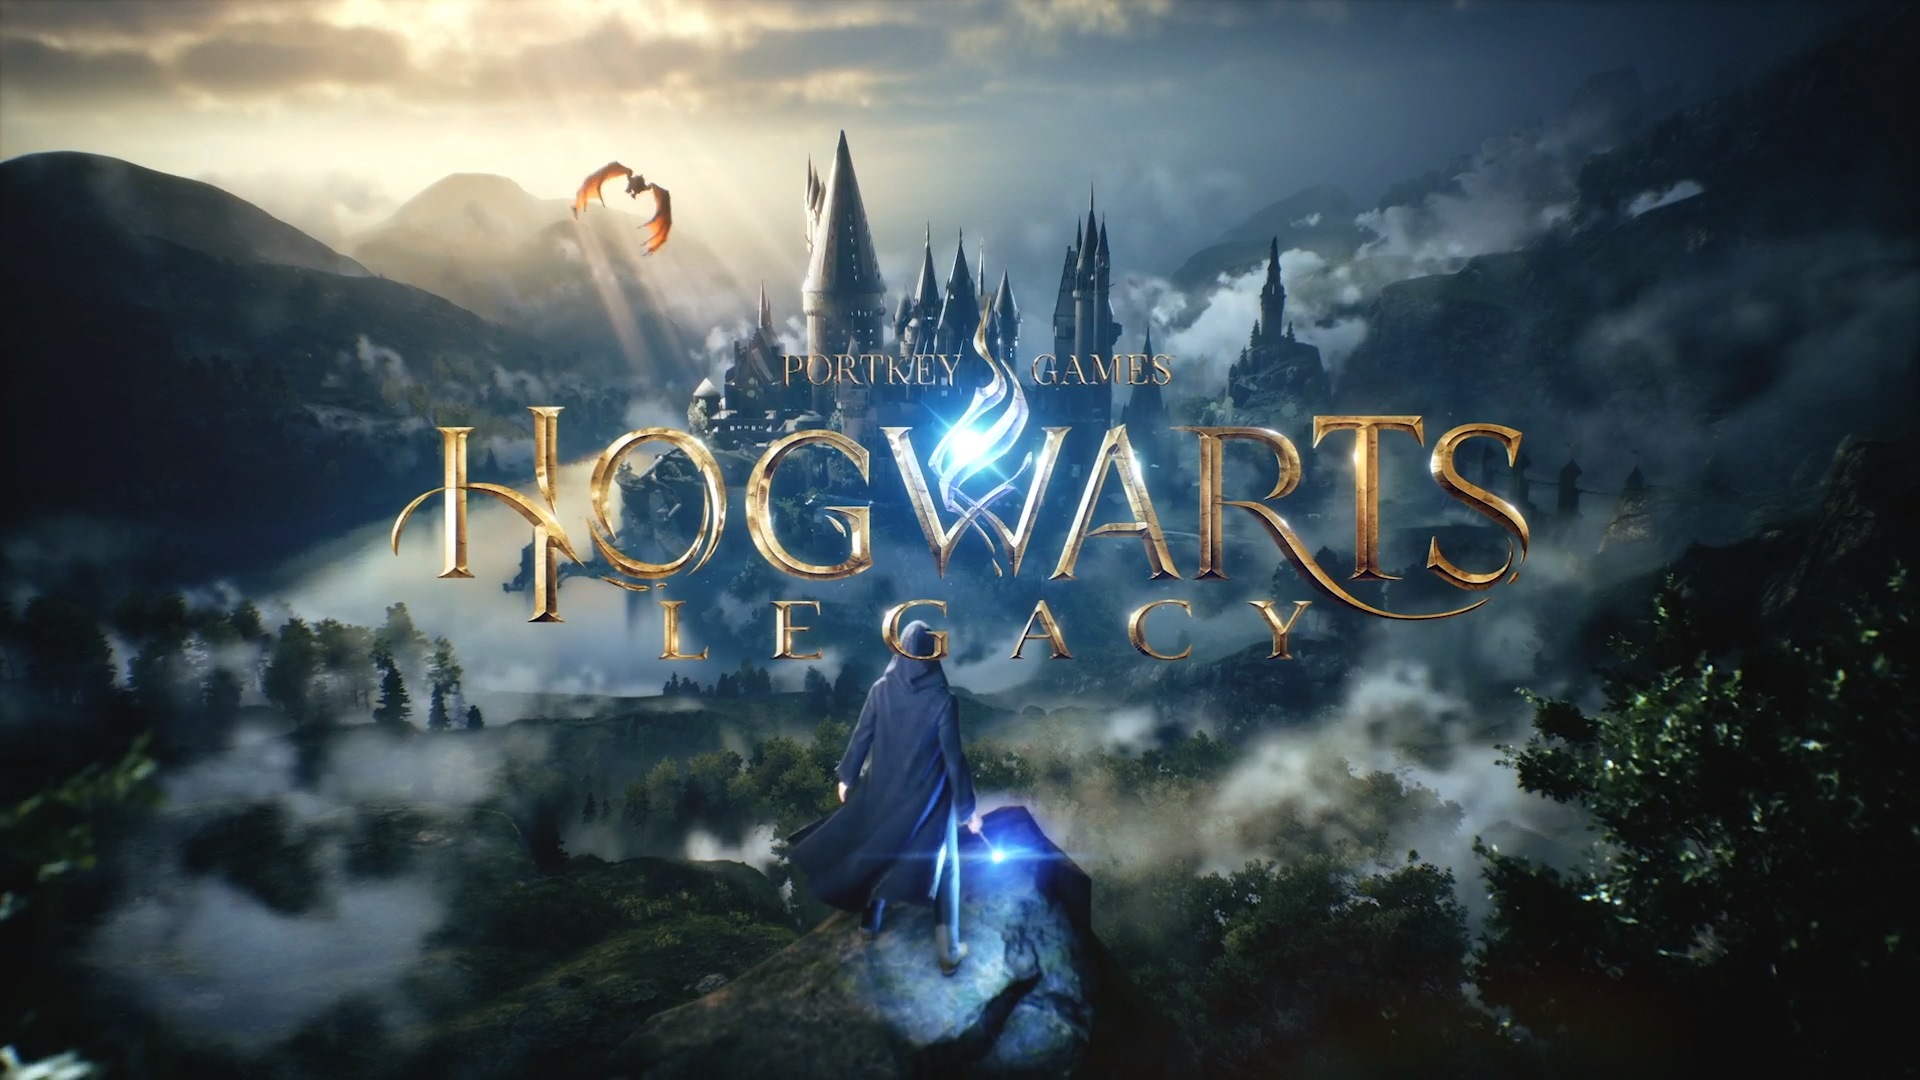 إشاعة: Hogwarts Legacy هي أكثر الألعاب تمنياً من قبل اللاعبين على متجر Steam